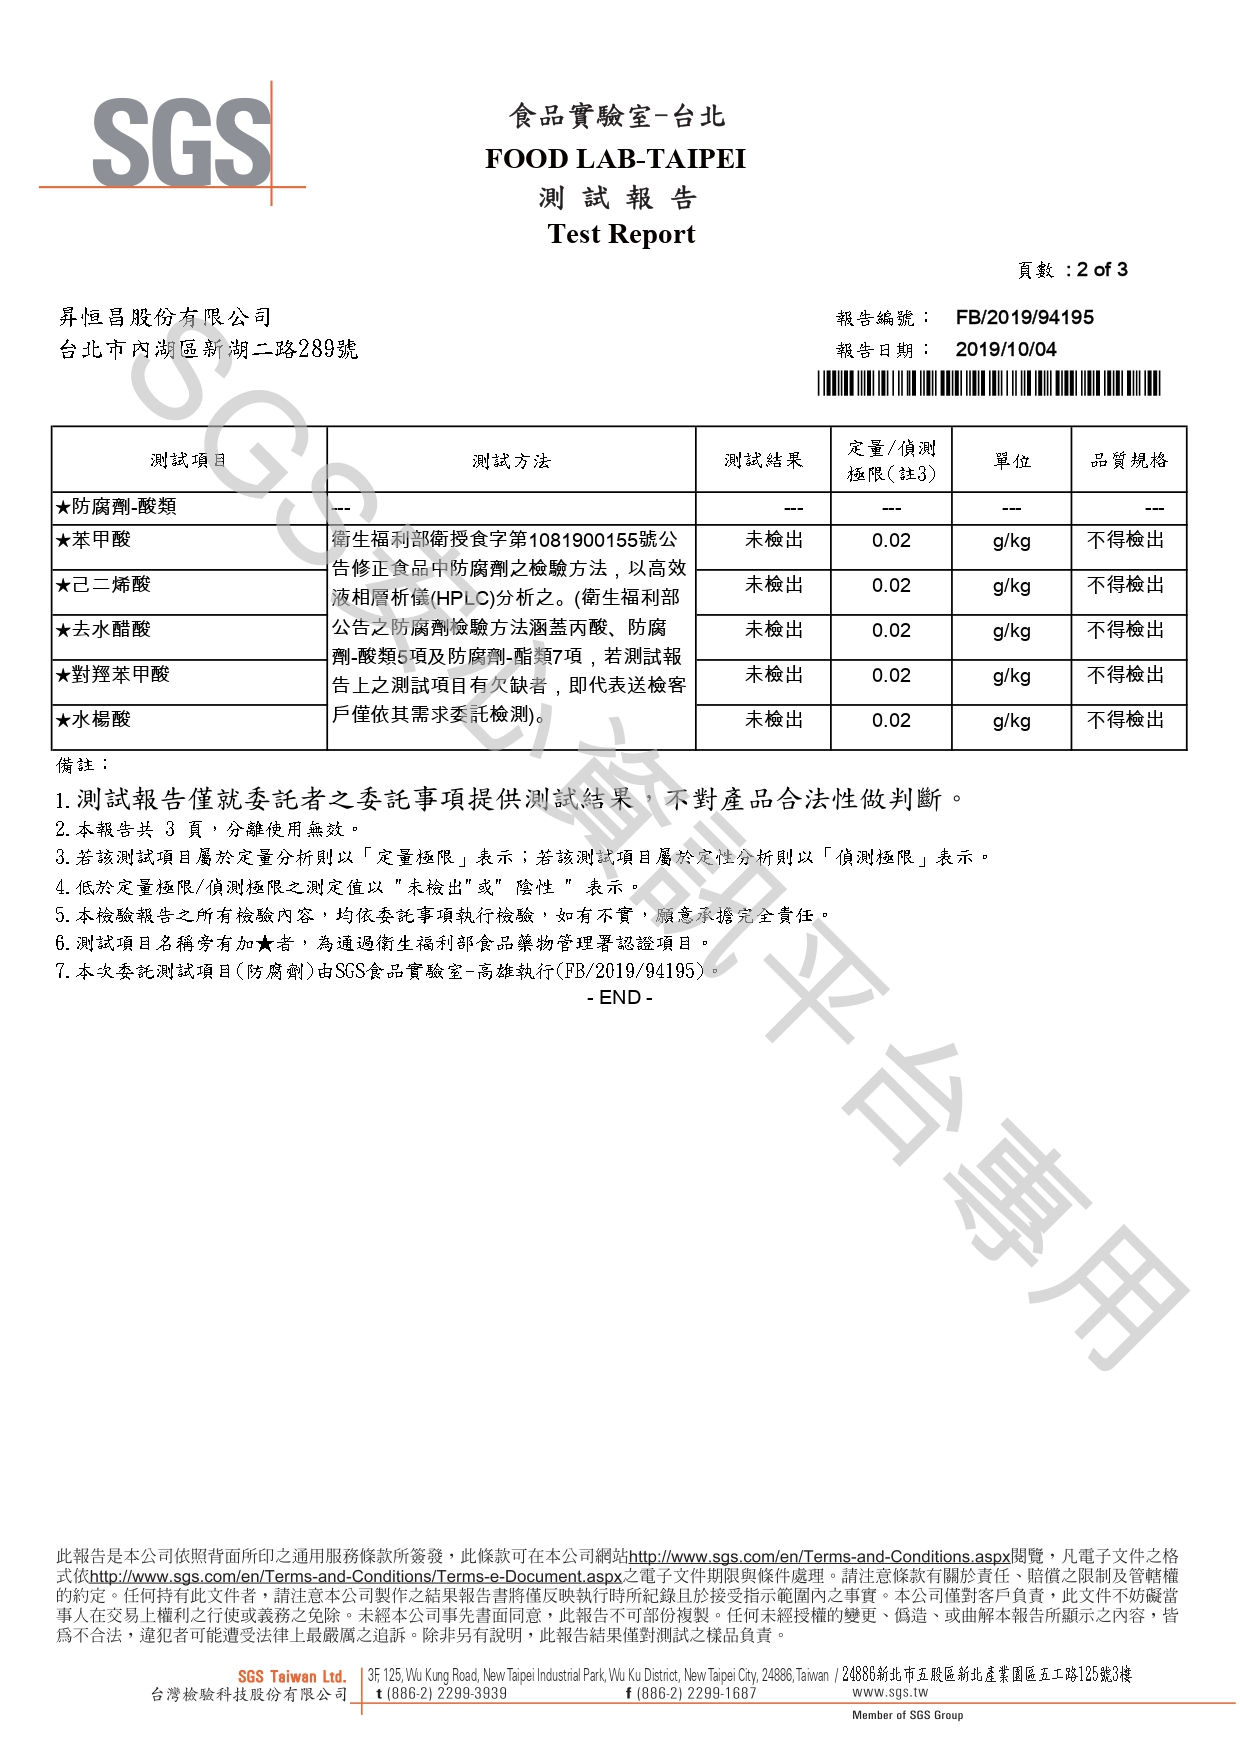 20191004昇恆昌免稅店-薑茶8入盒裝-大腸桿菌&防腐劑-檢驗報告page-0002.jpg